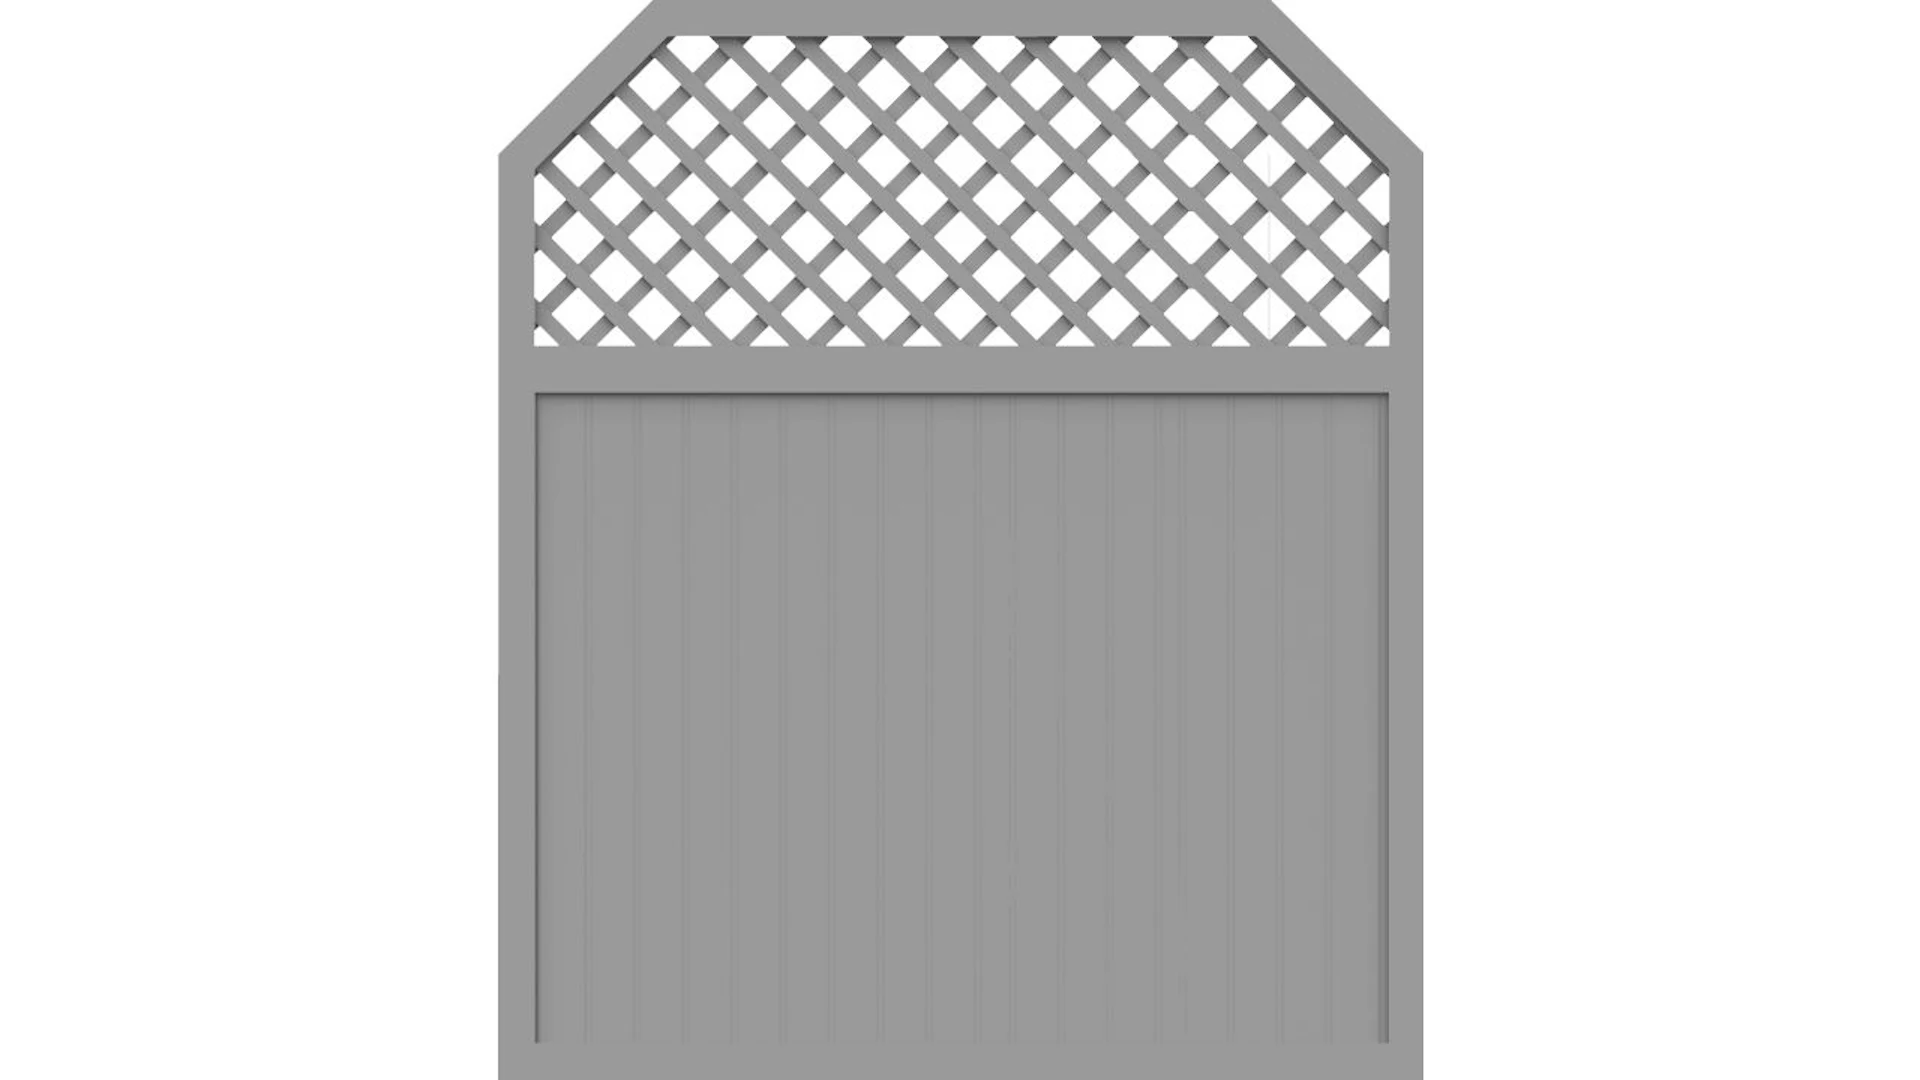 planeo Basic - clôture Type I 180 x 210 cm gris argent